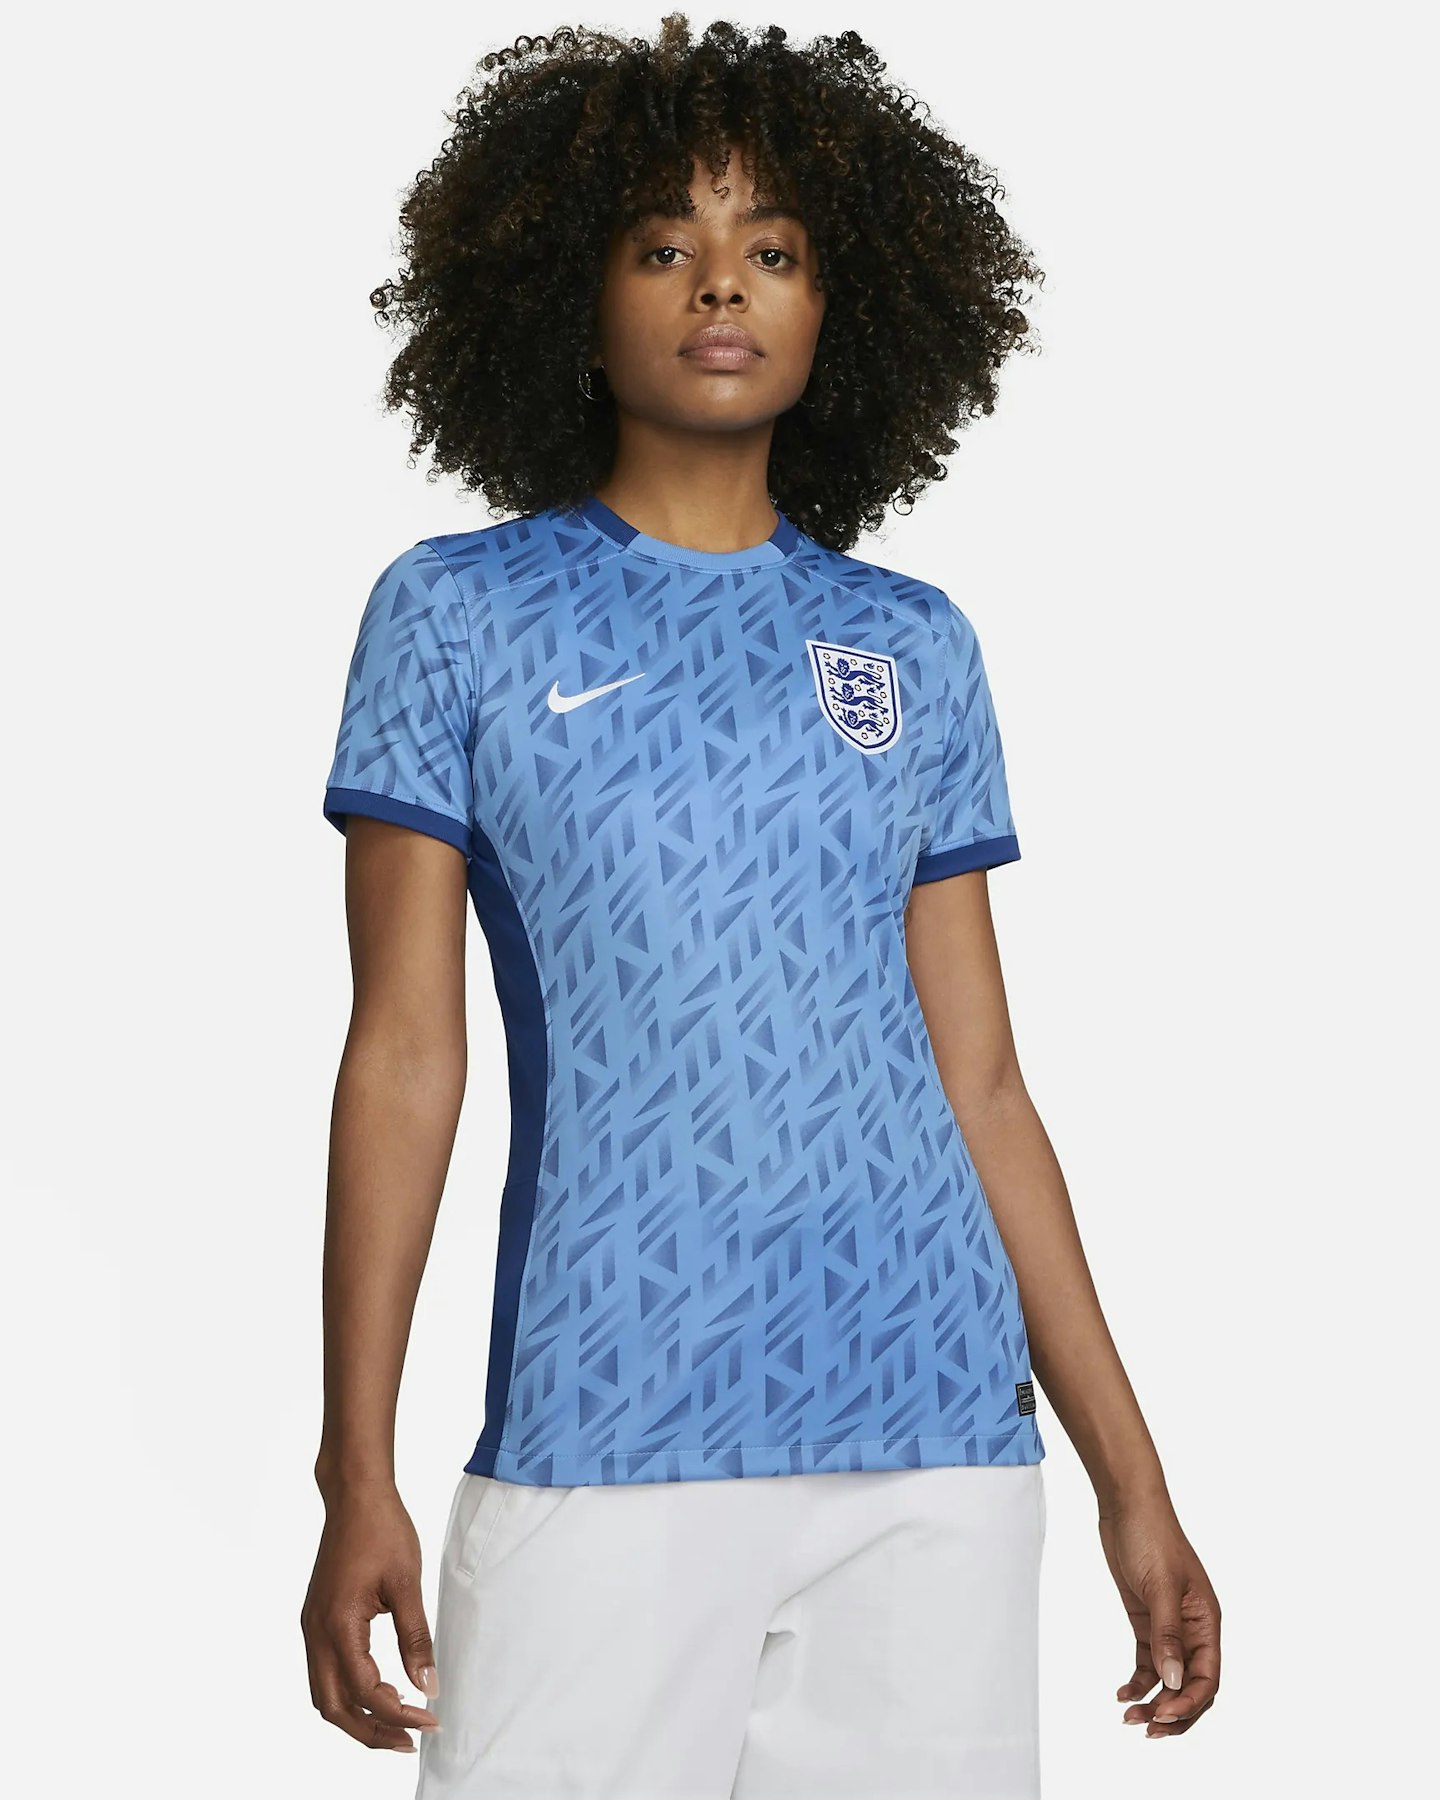 england womens world cup shirt